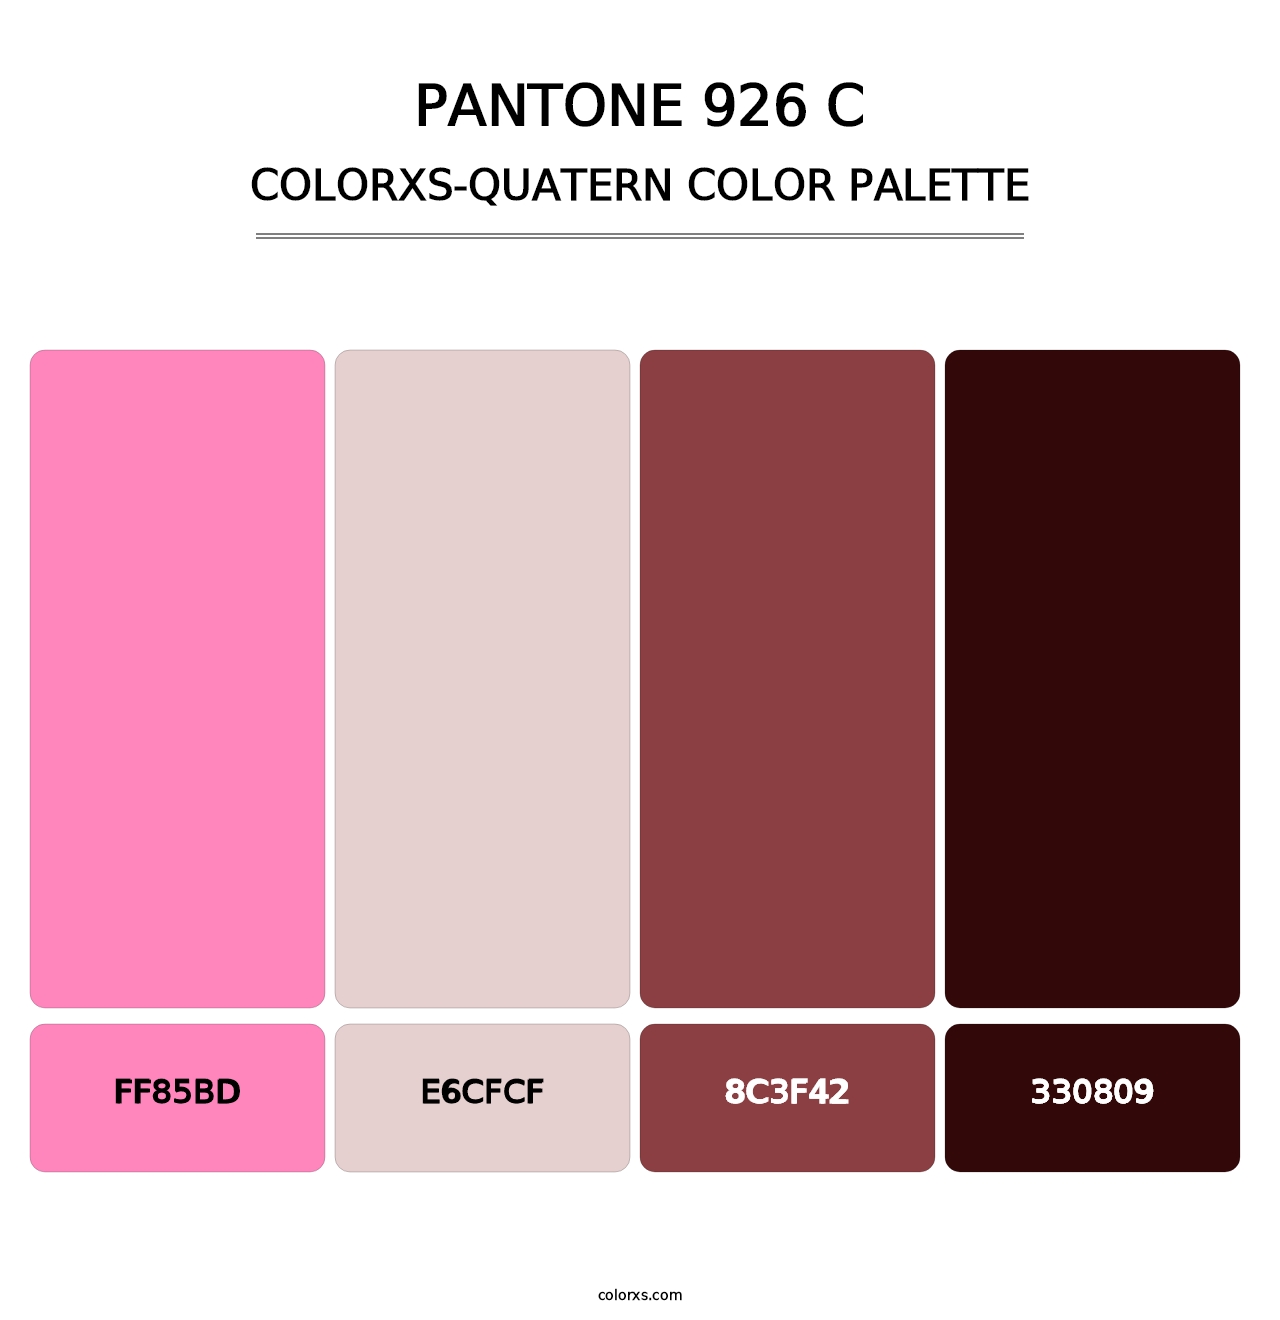 PANTONE 926 C - Colorxs Quatern Palette